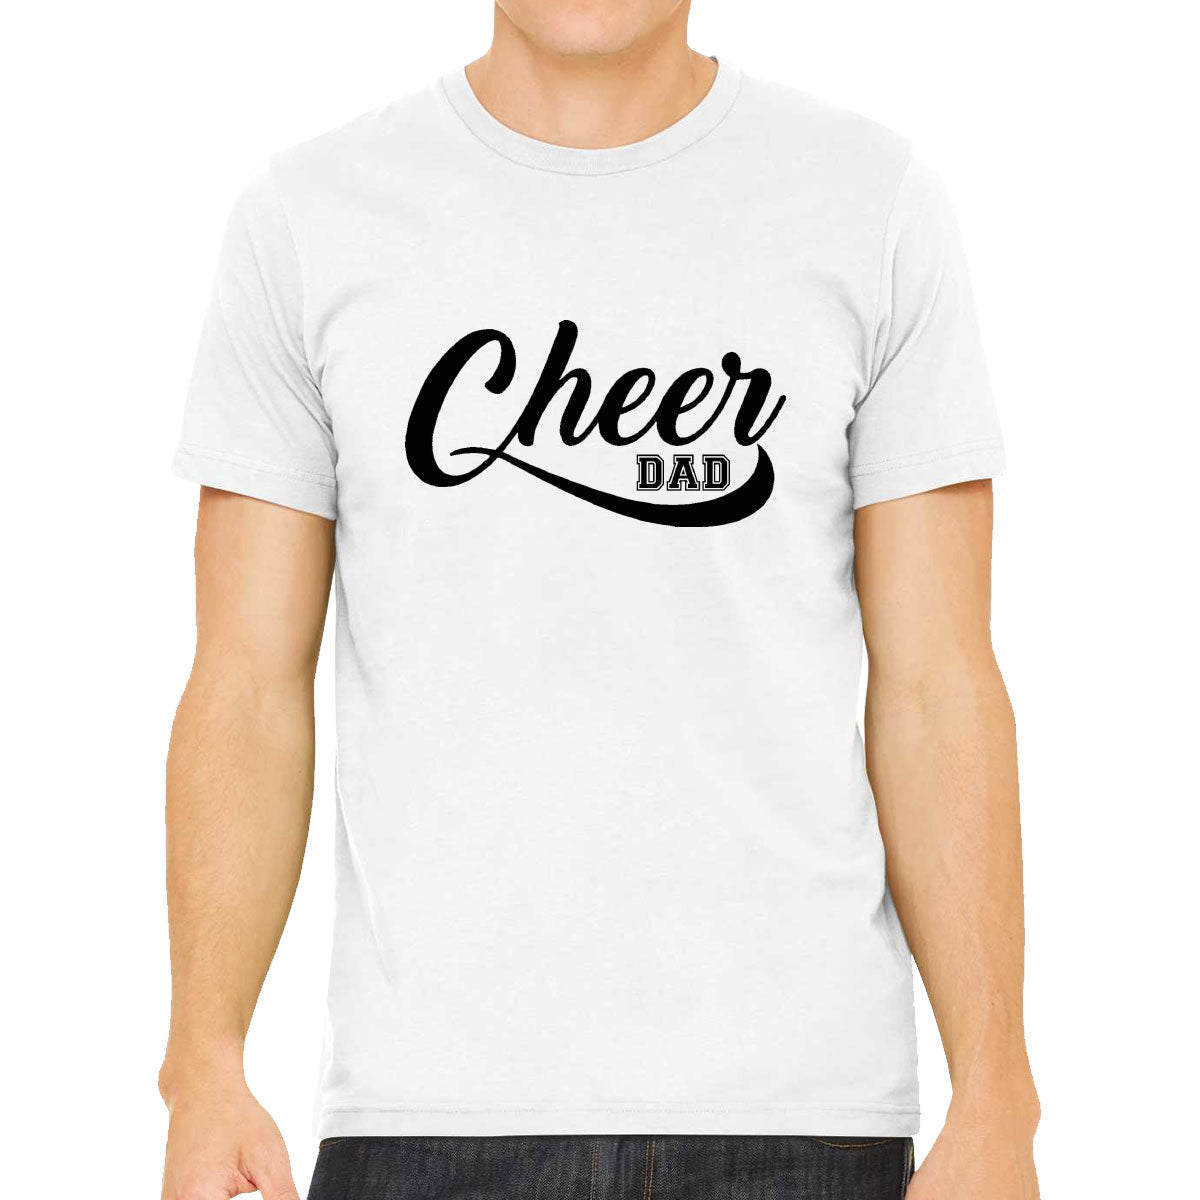 Cheer Dad Men's T-shirt